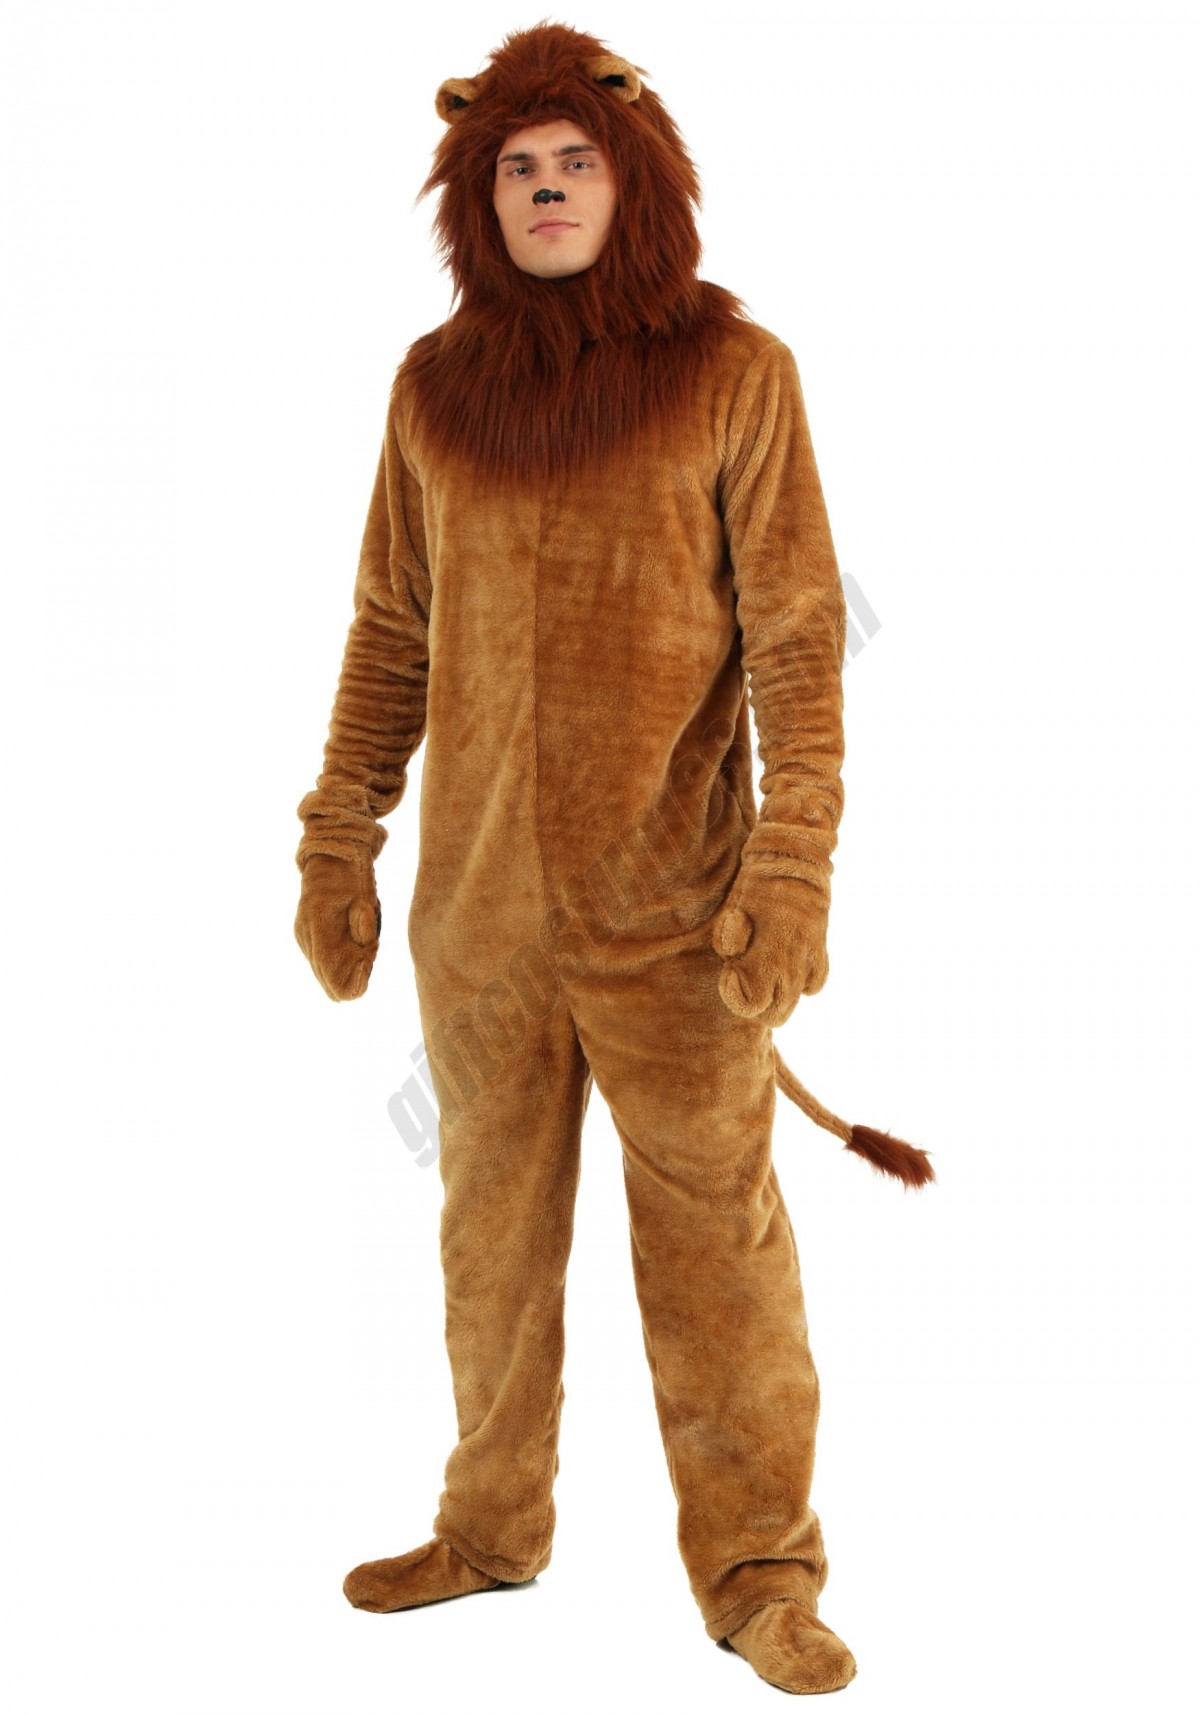 Adult Deluxe Lion Costume - Men's - -0